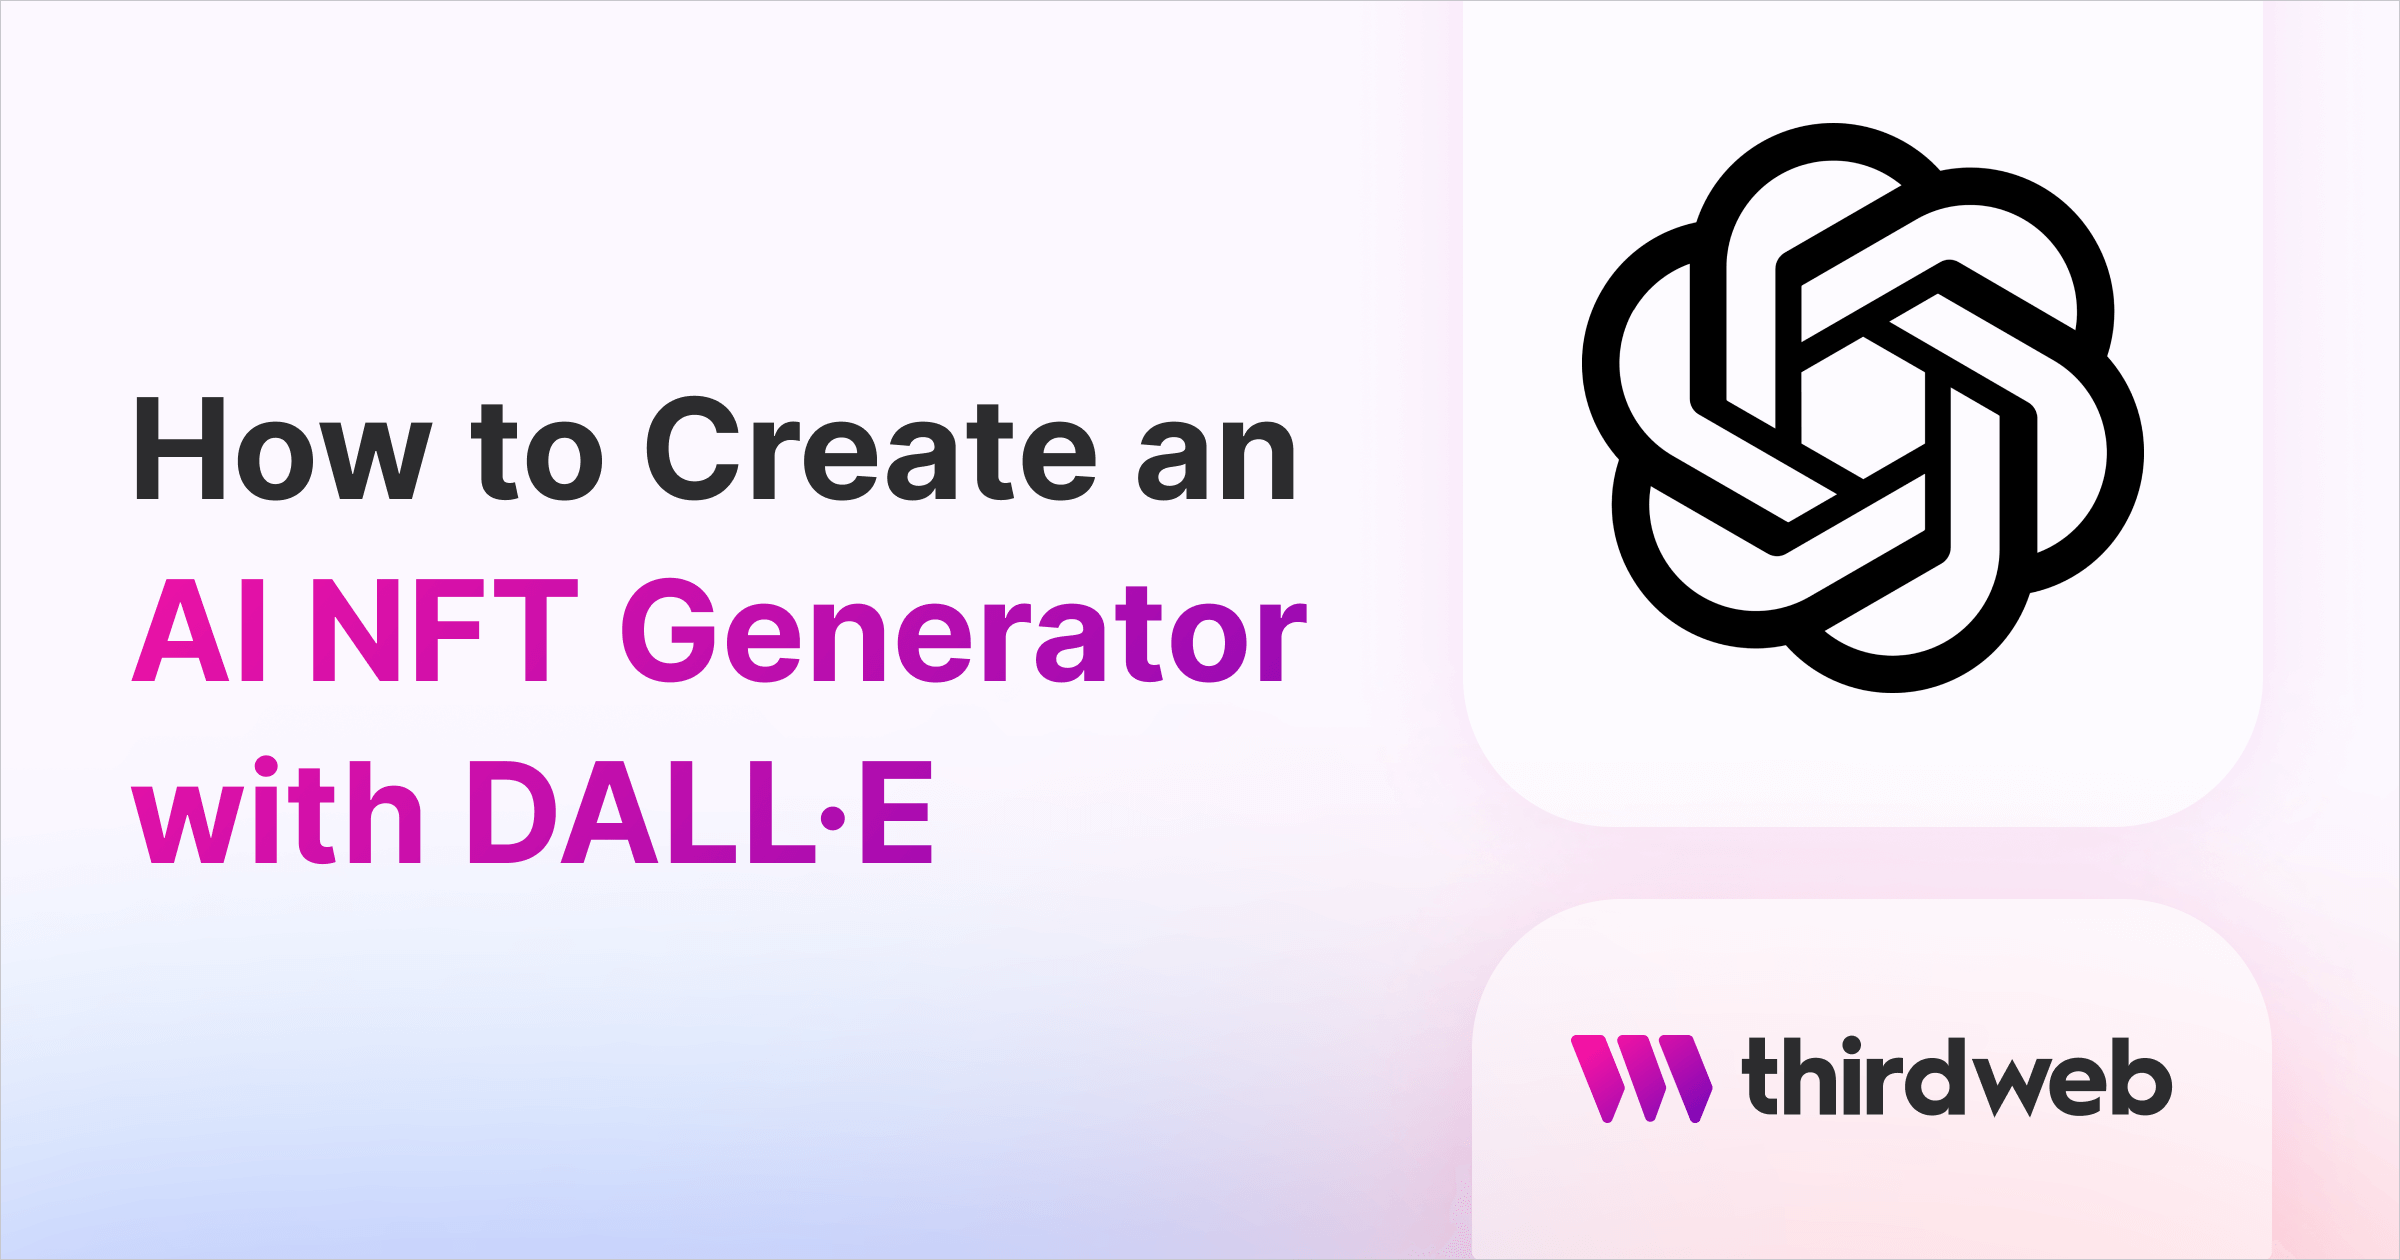 How to Create an AI NFT Generator with DALL-E (OpenAI)